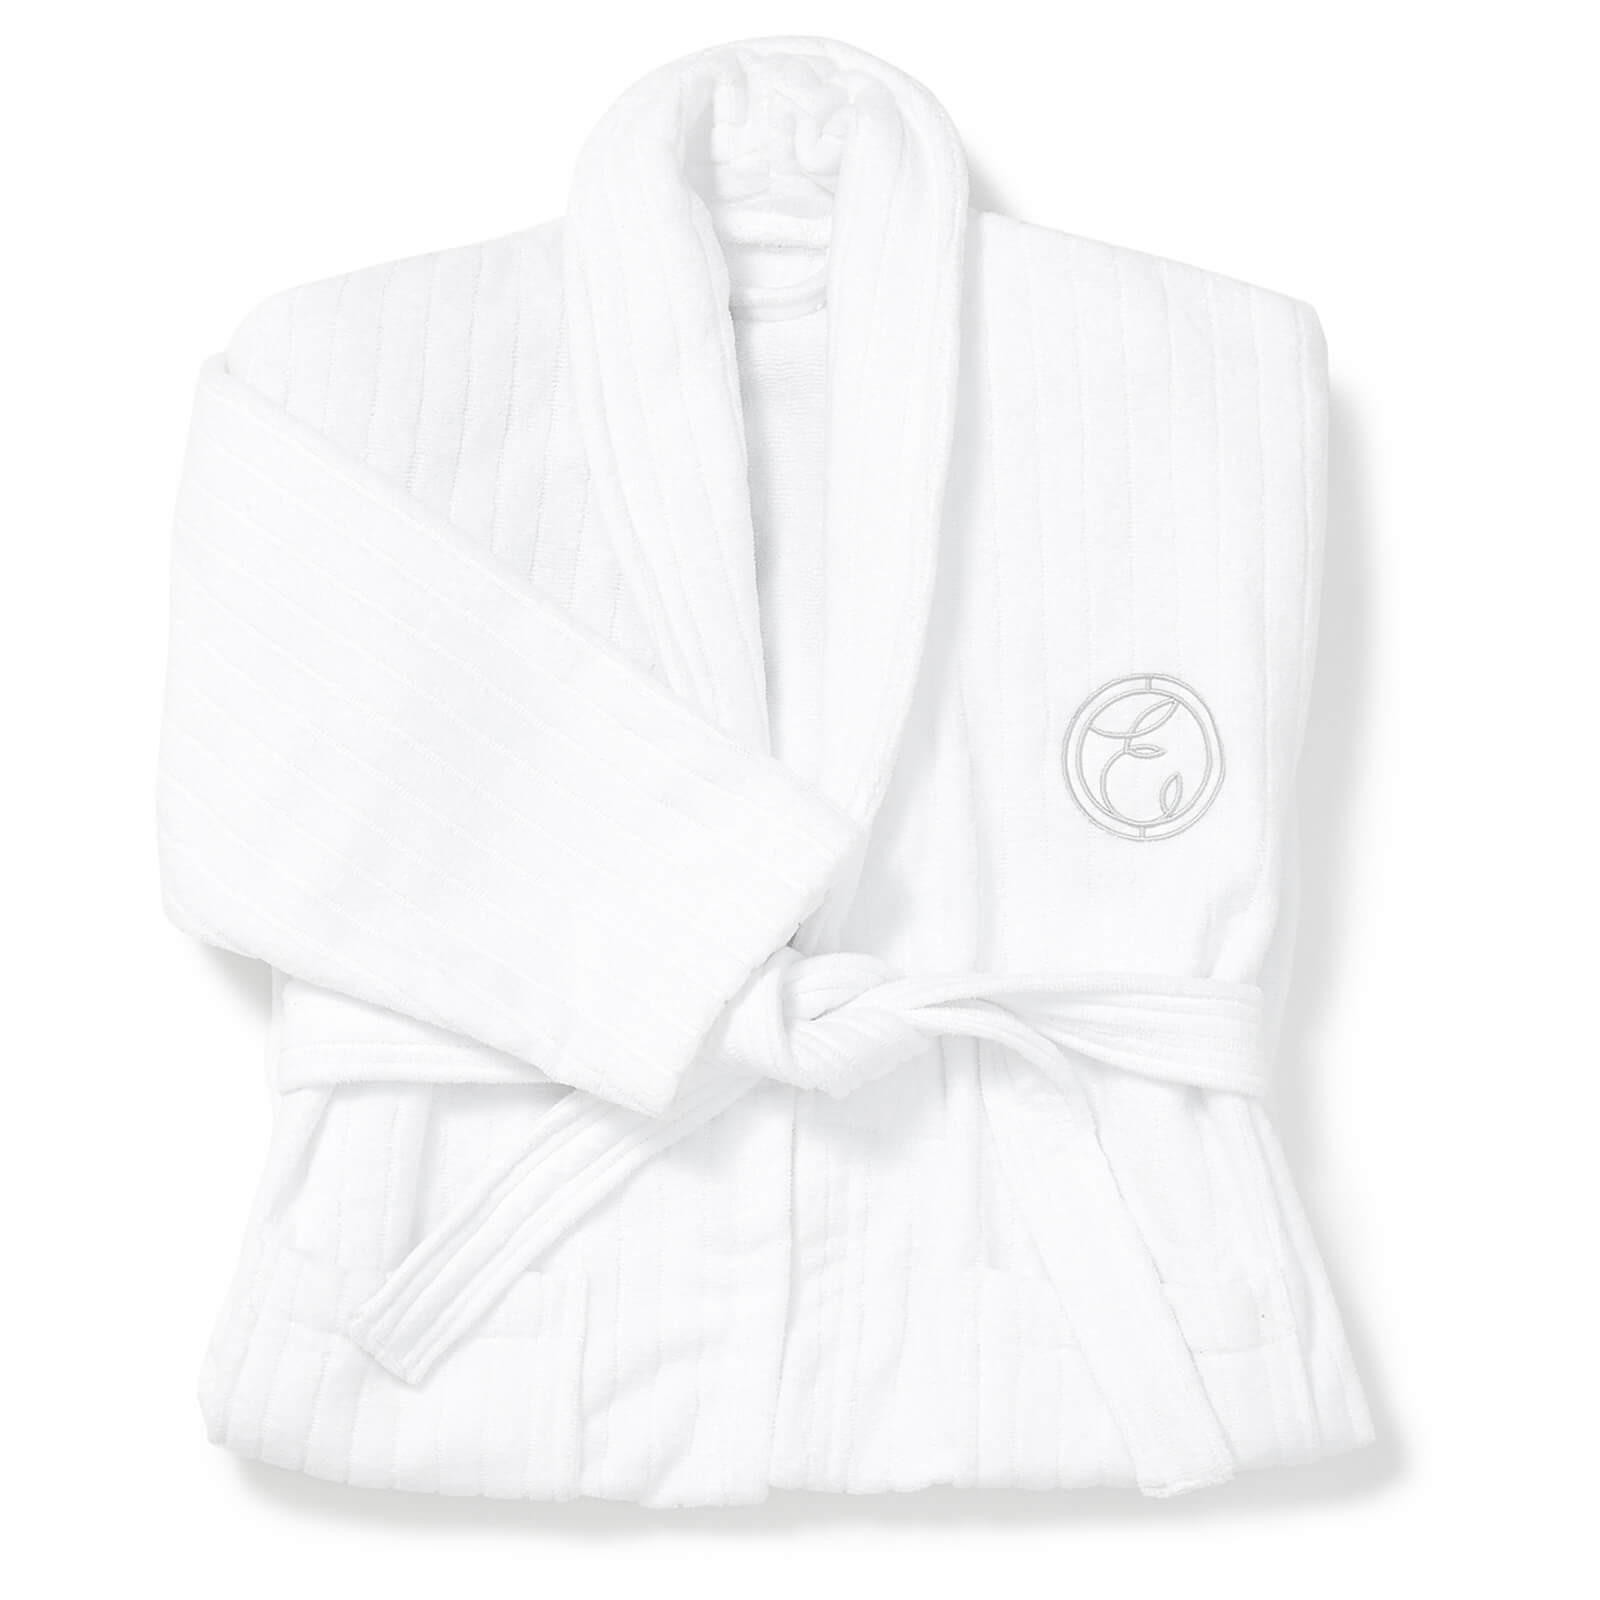 ESPA Cotton Embroidered Bath Robe - M